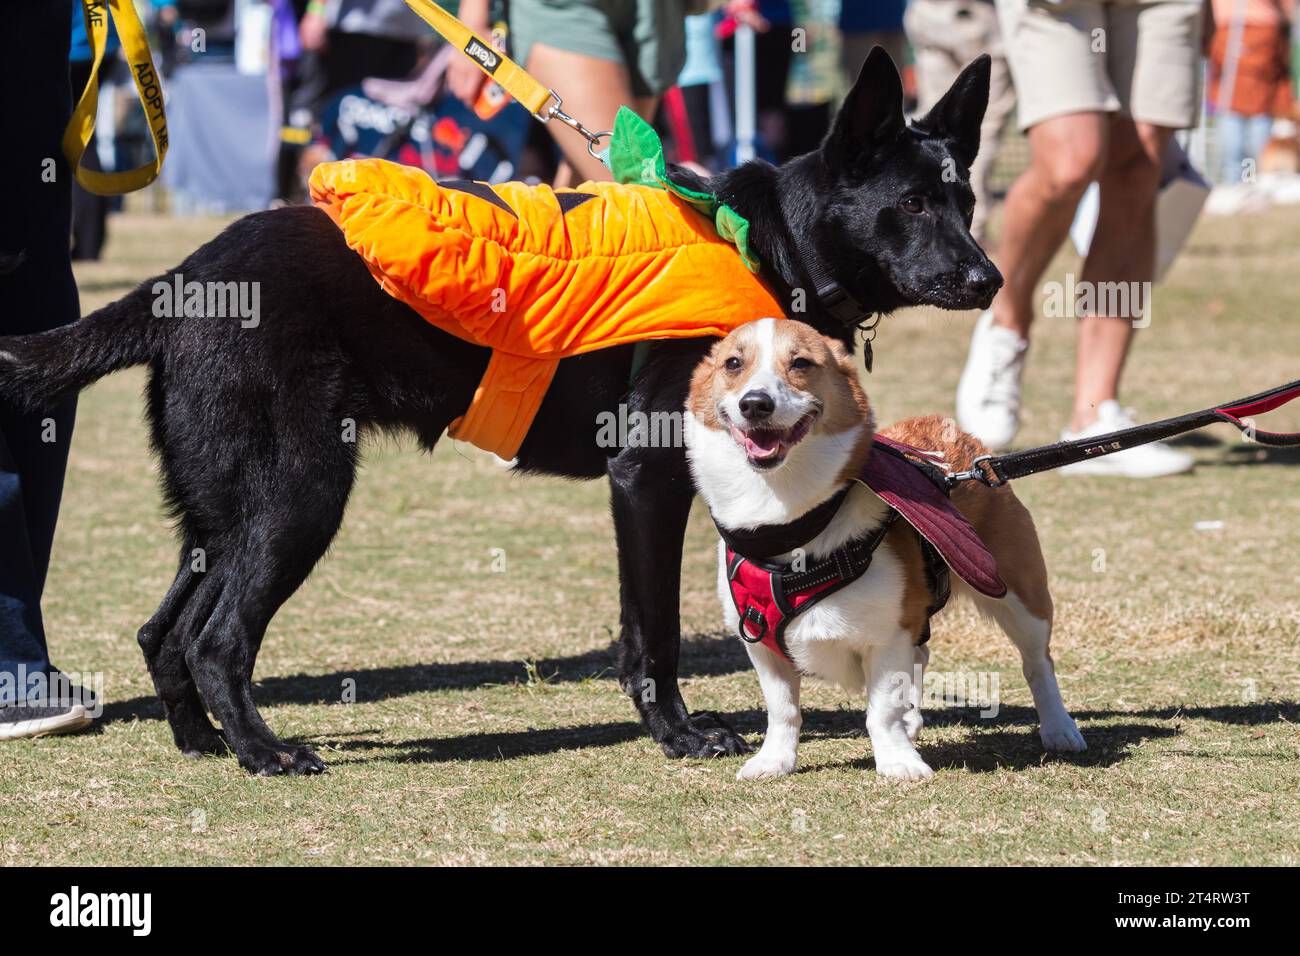 Deux chiens portent des costumes pour le concours d'Halloween au festival de chiens dans le parc d'Atlanta Banque D'Images